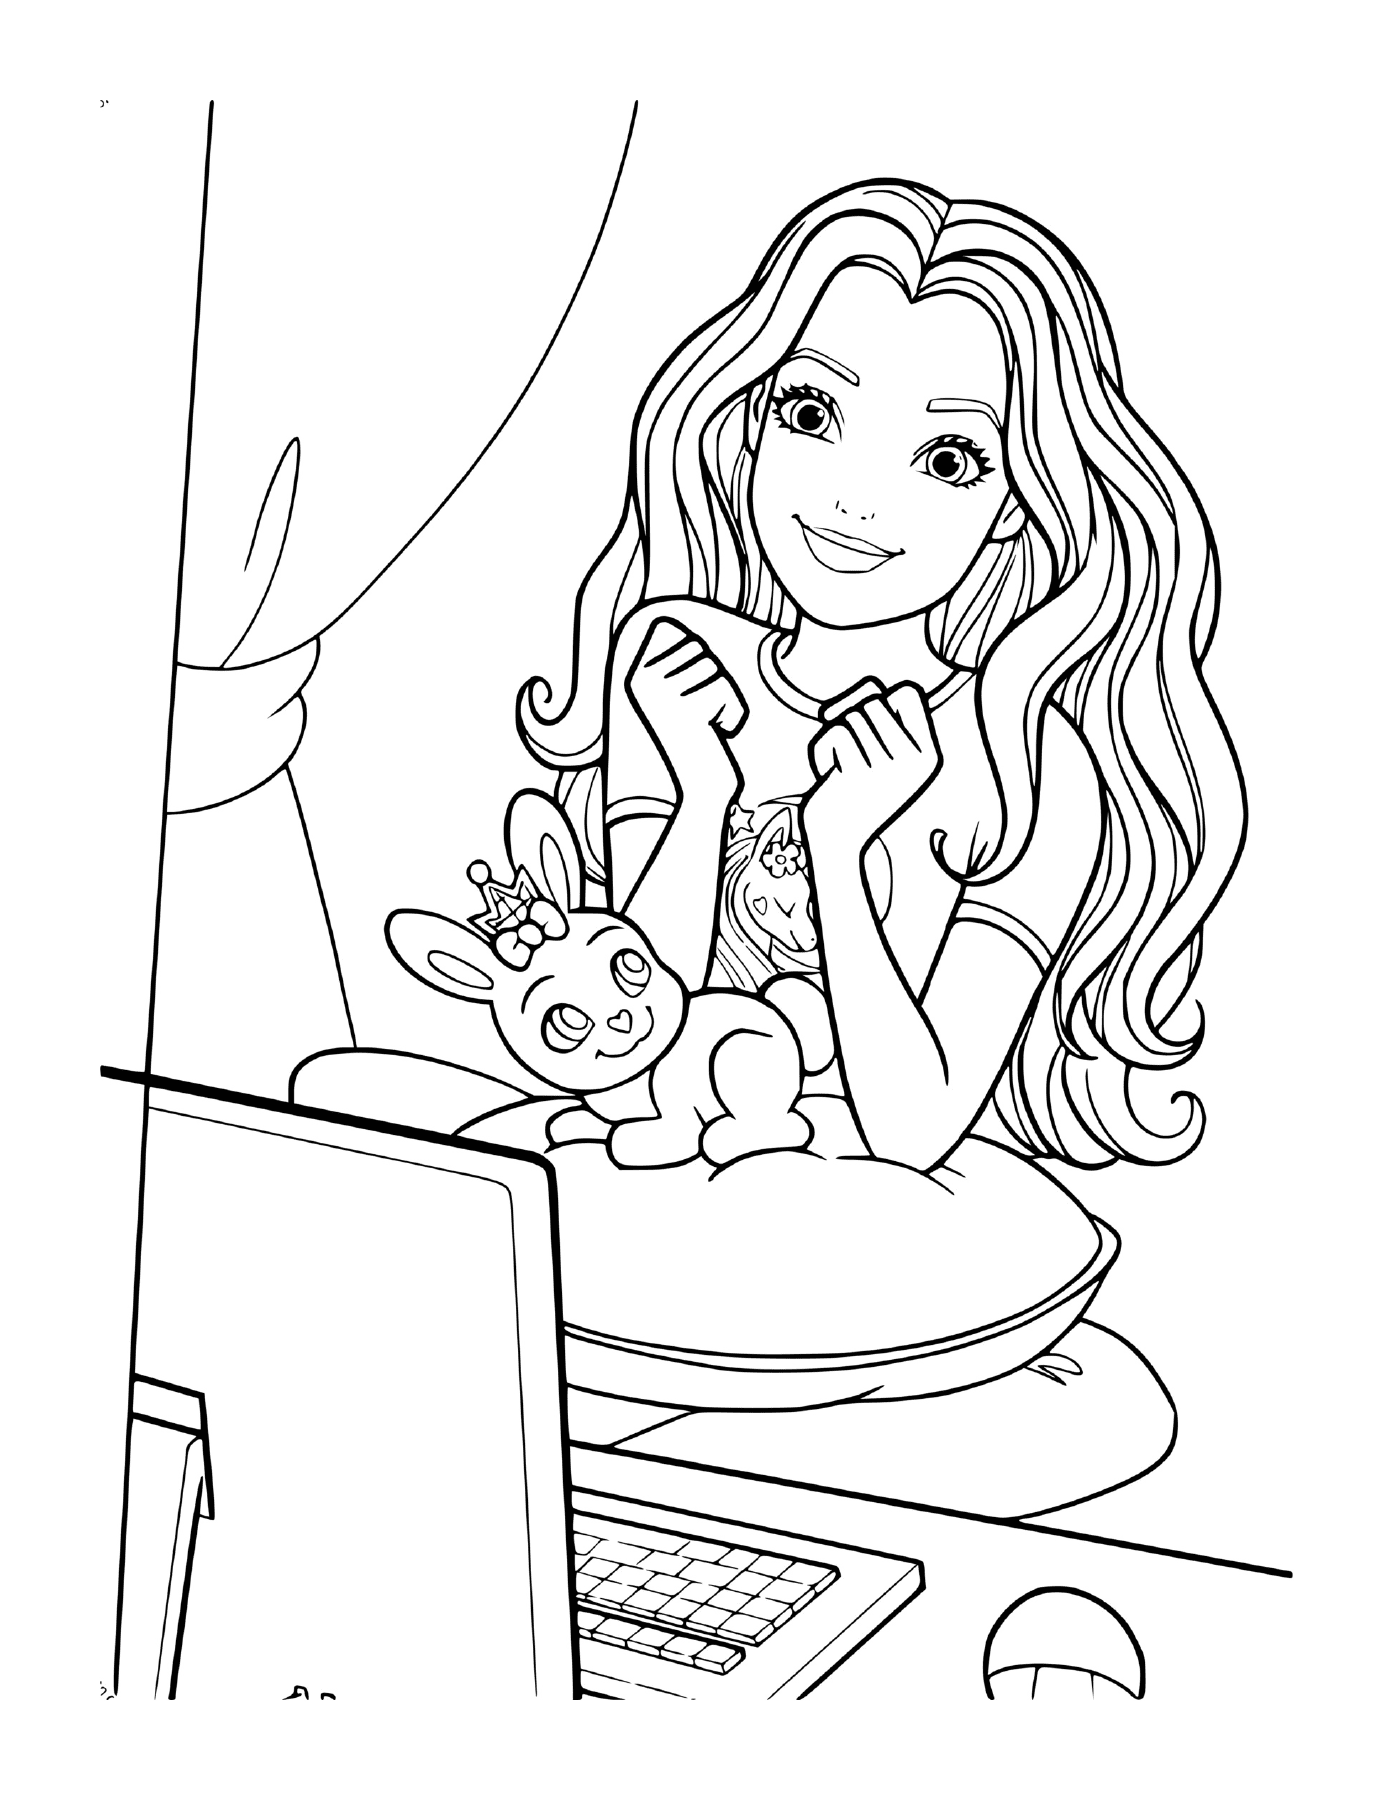   Une jeune fille assise devant un ordinateur 